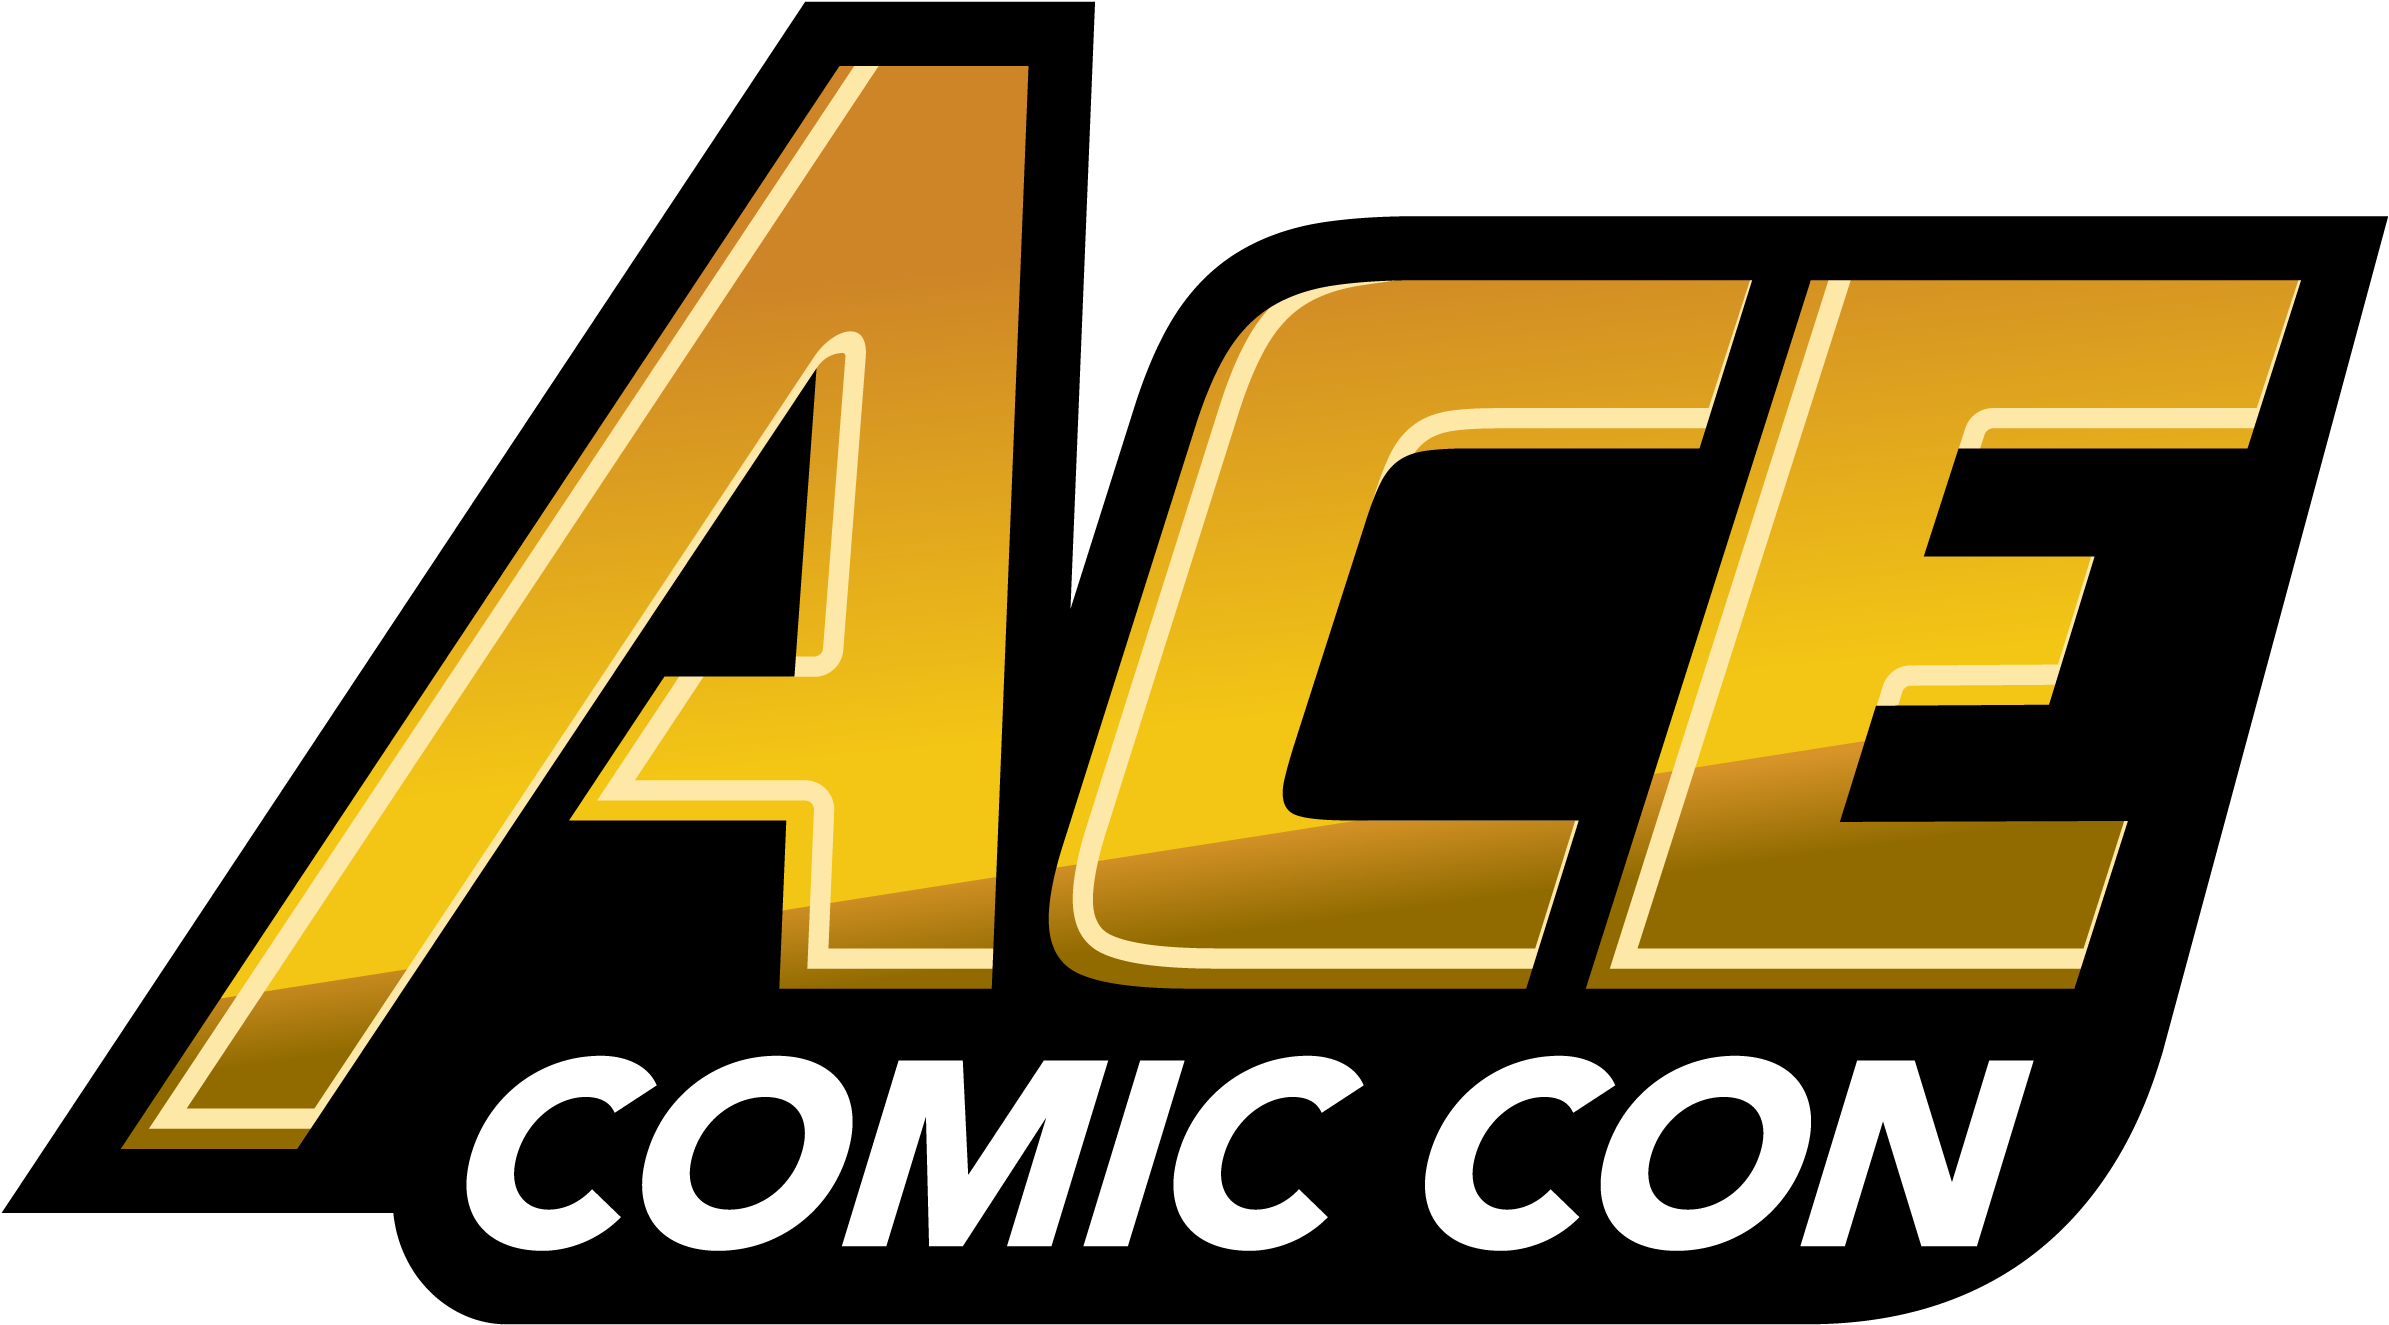 Ace Comic Con Logo (2500x1458)